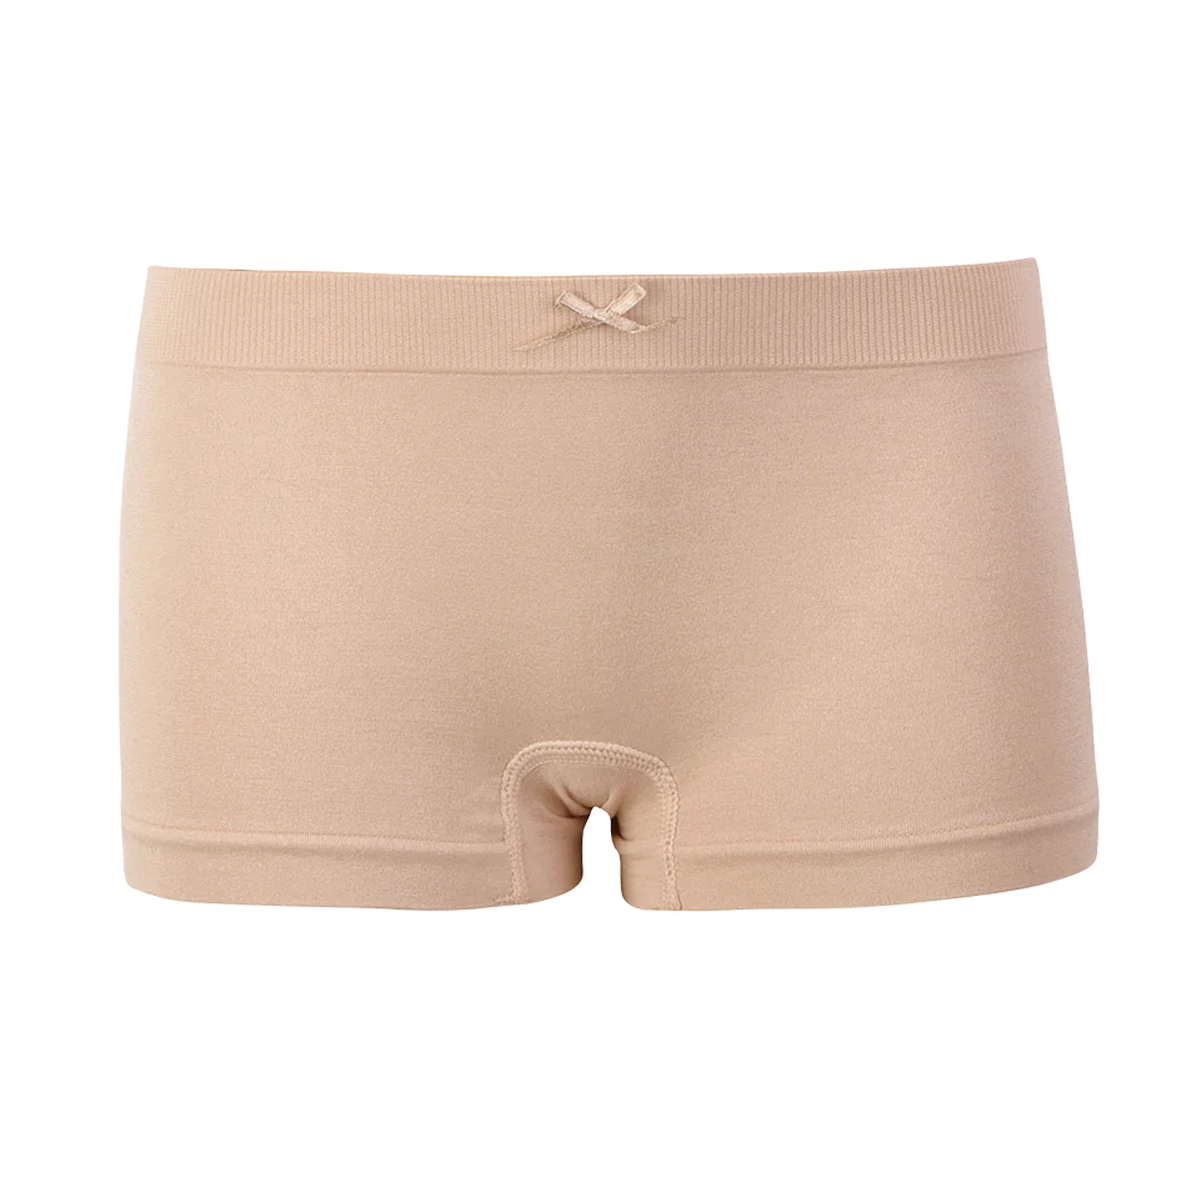 Girls' Underwear - Screen Print, Sizes 4-16, 5 Pack